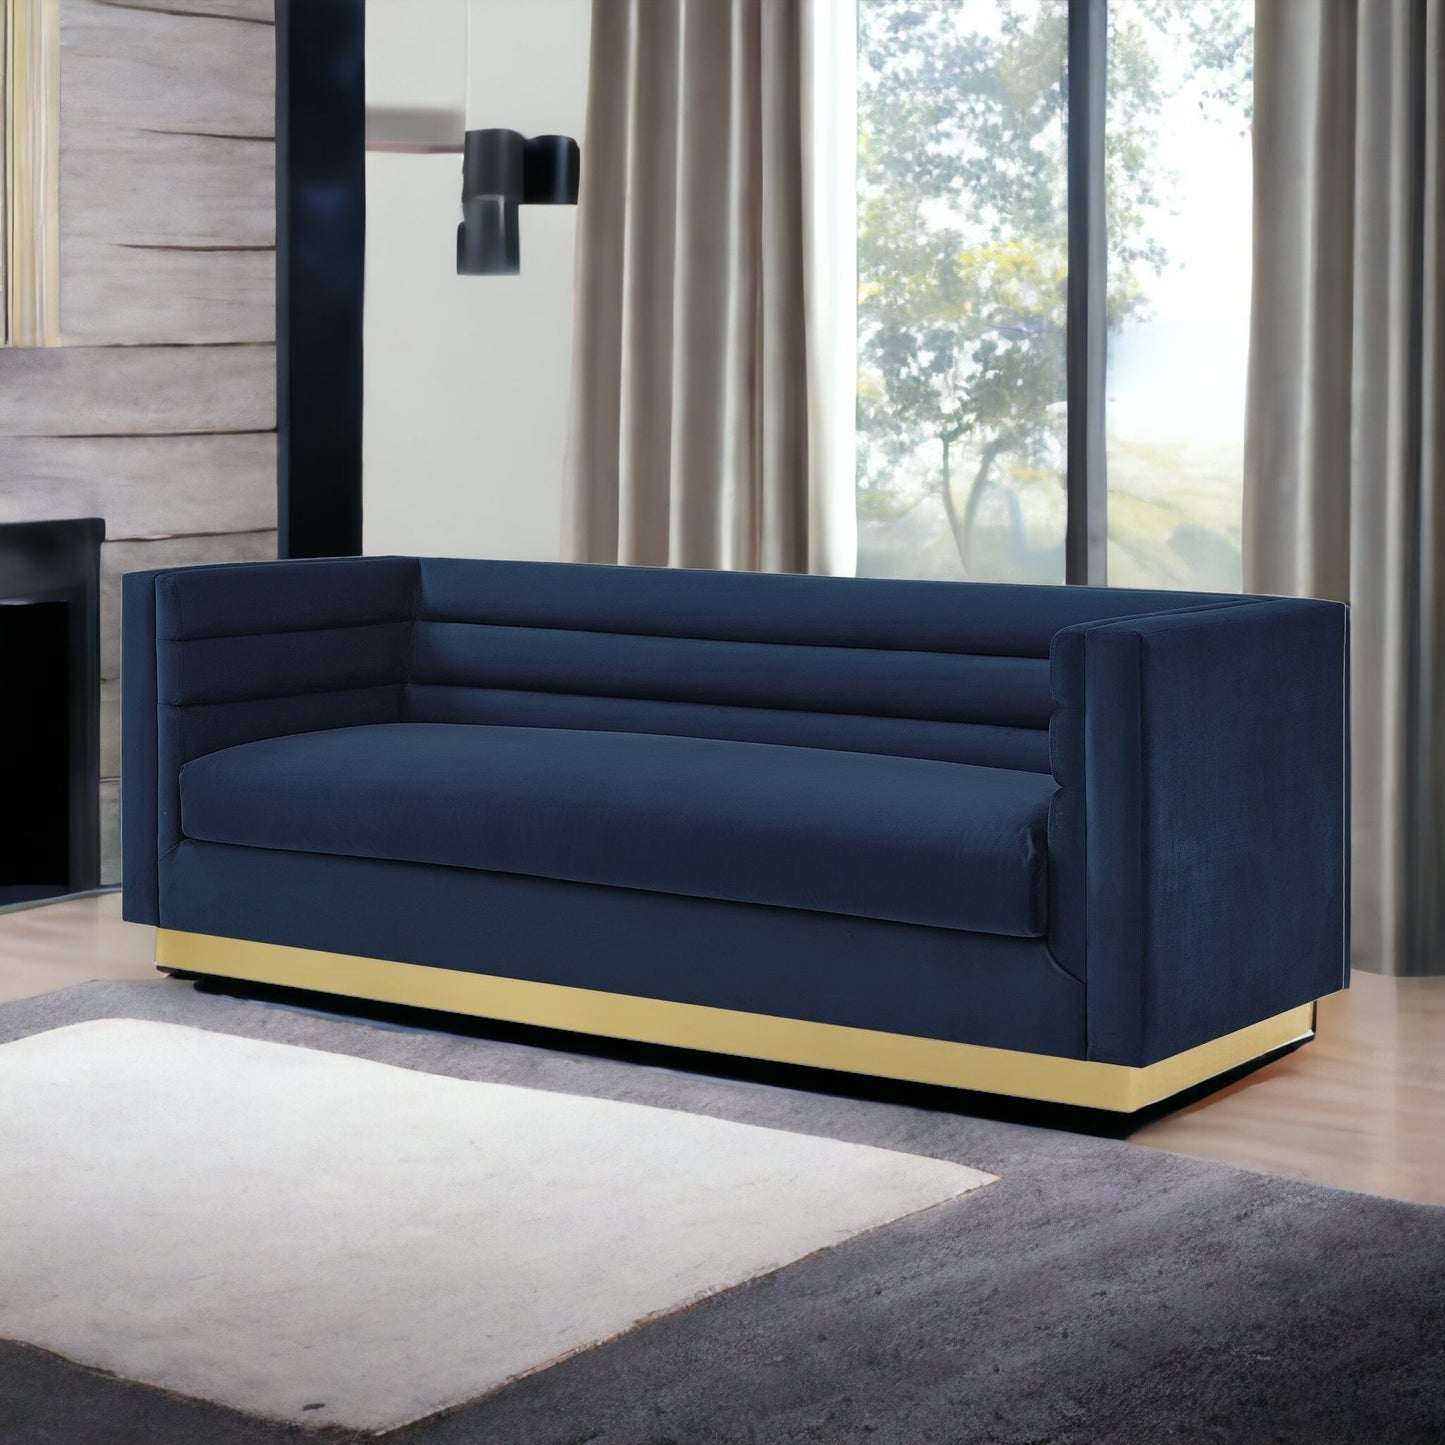 84" Navy Blue Velvet Sofa With Legs